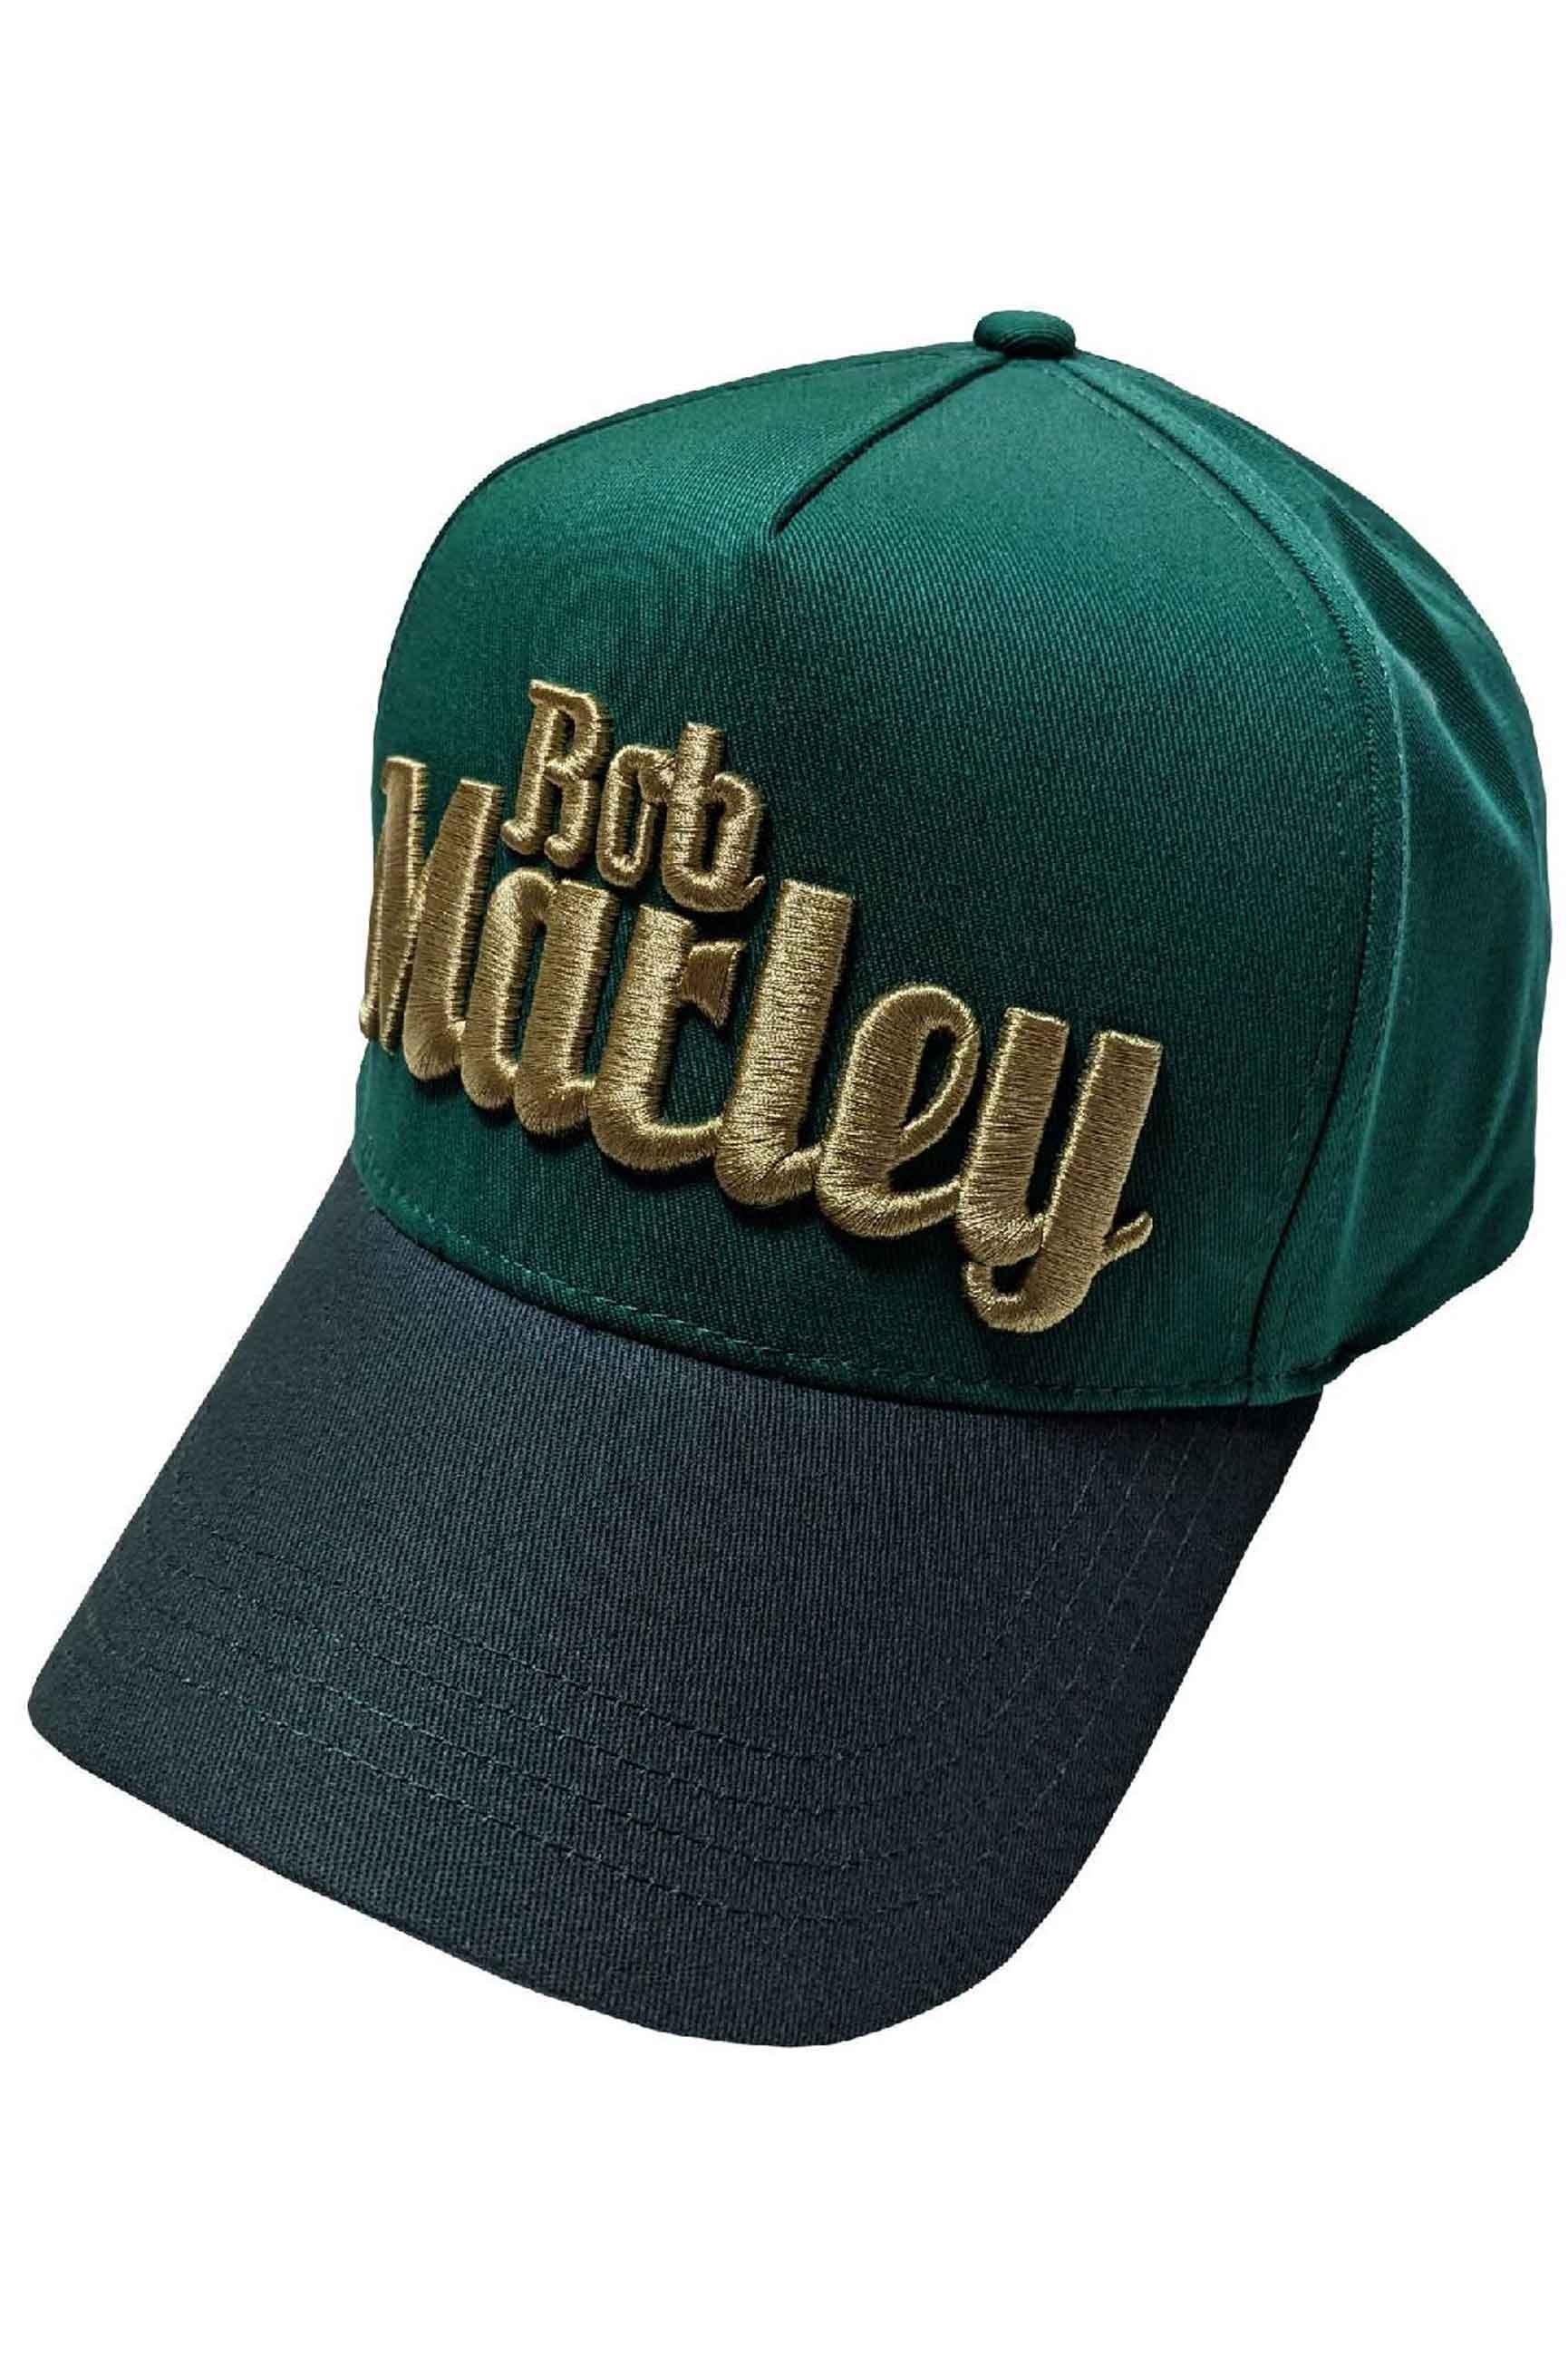 Бейсбольная кепка Trucker с текстовым логотипом Bob Marley, зеленый